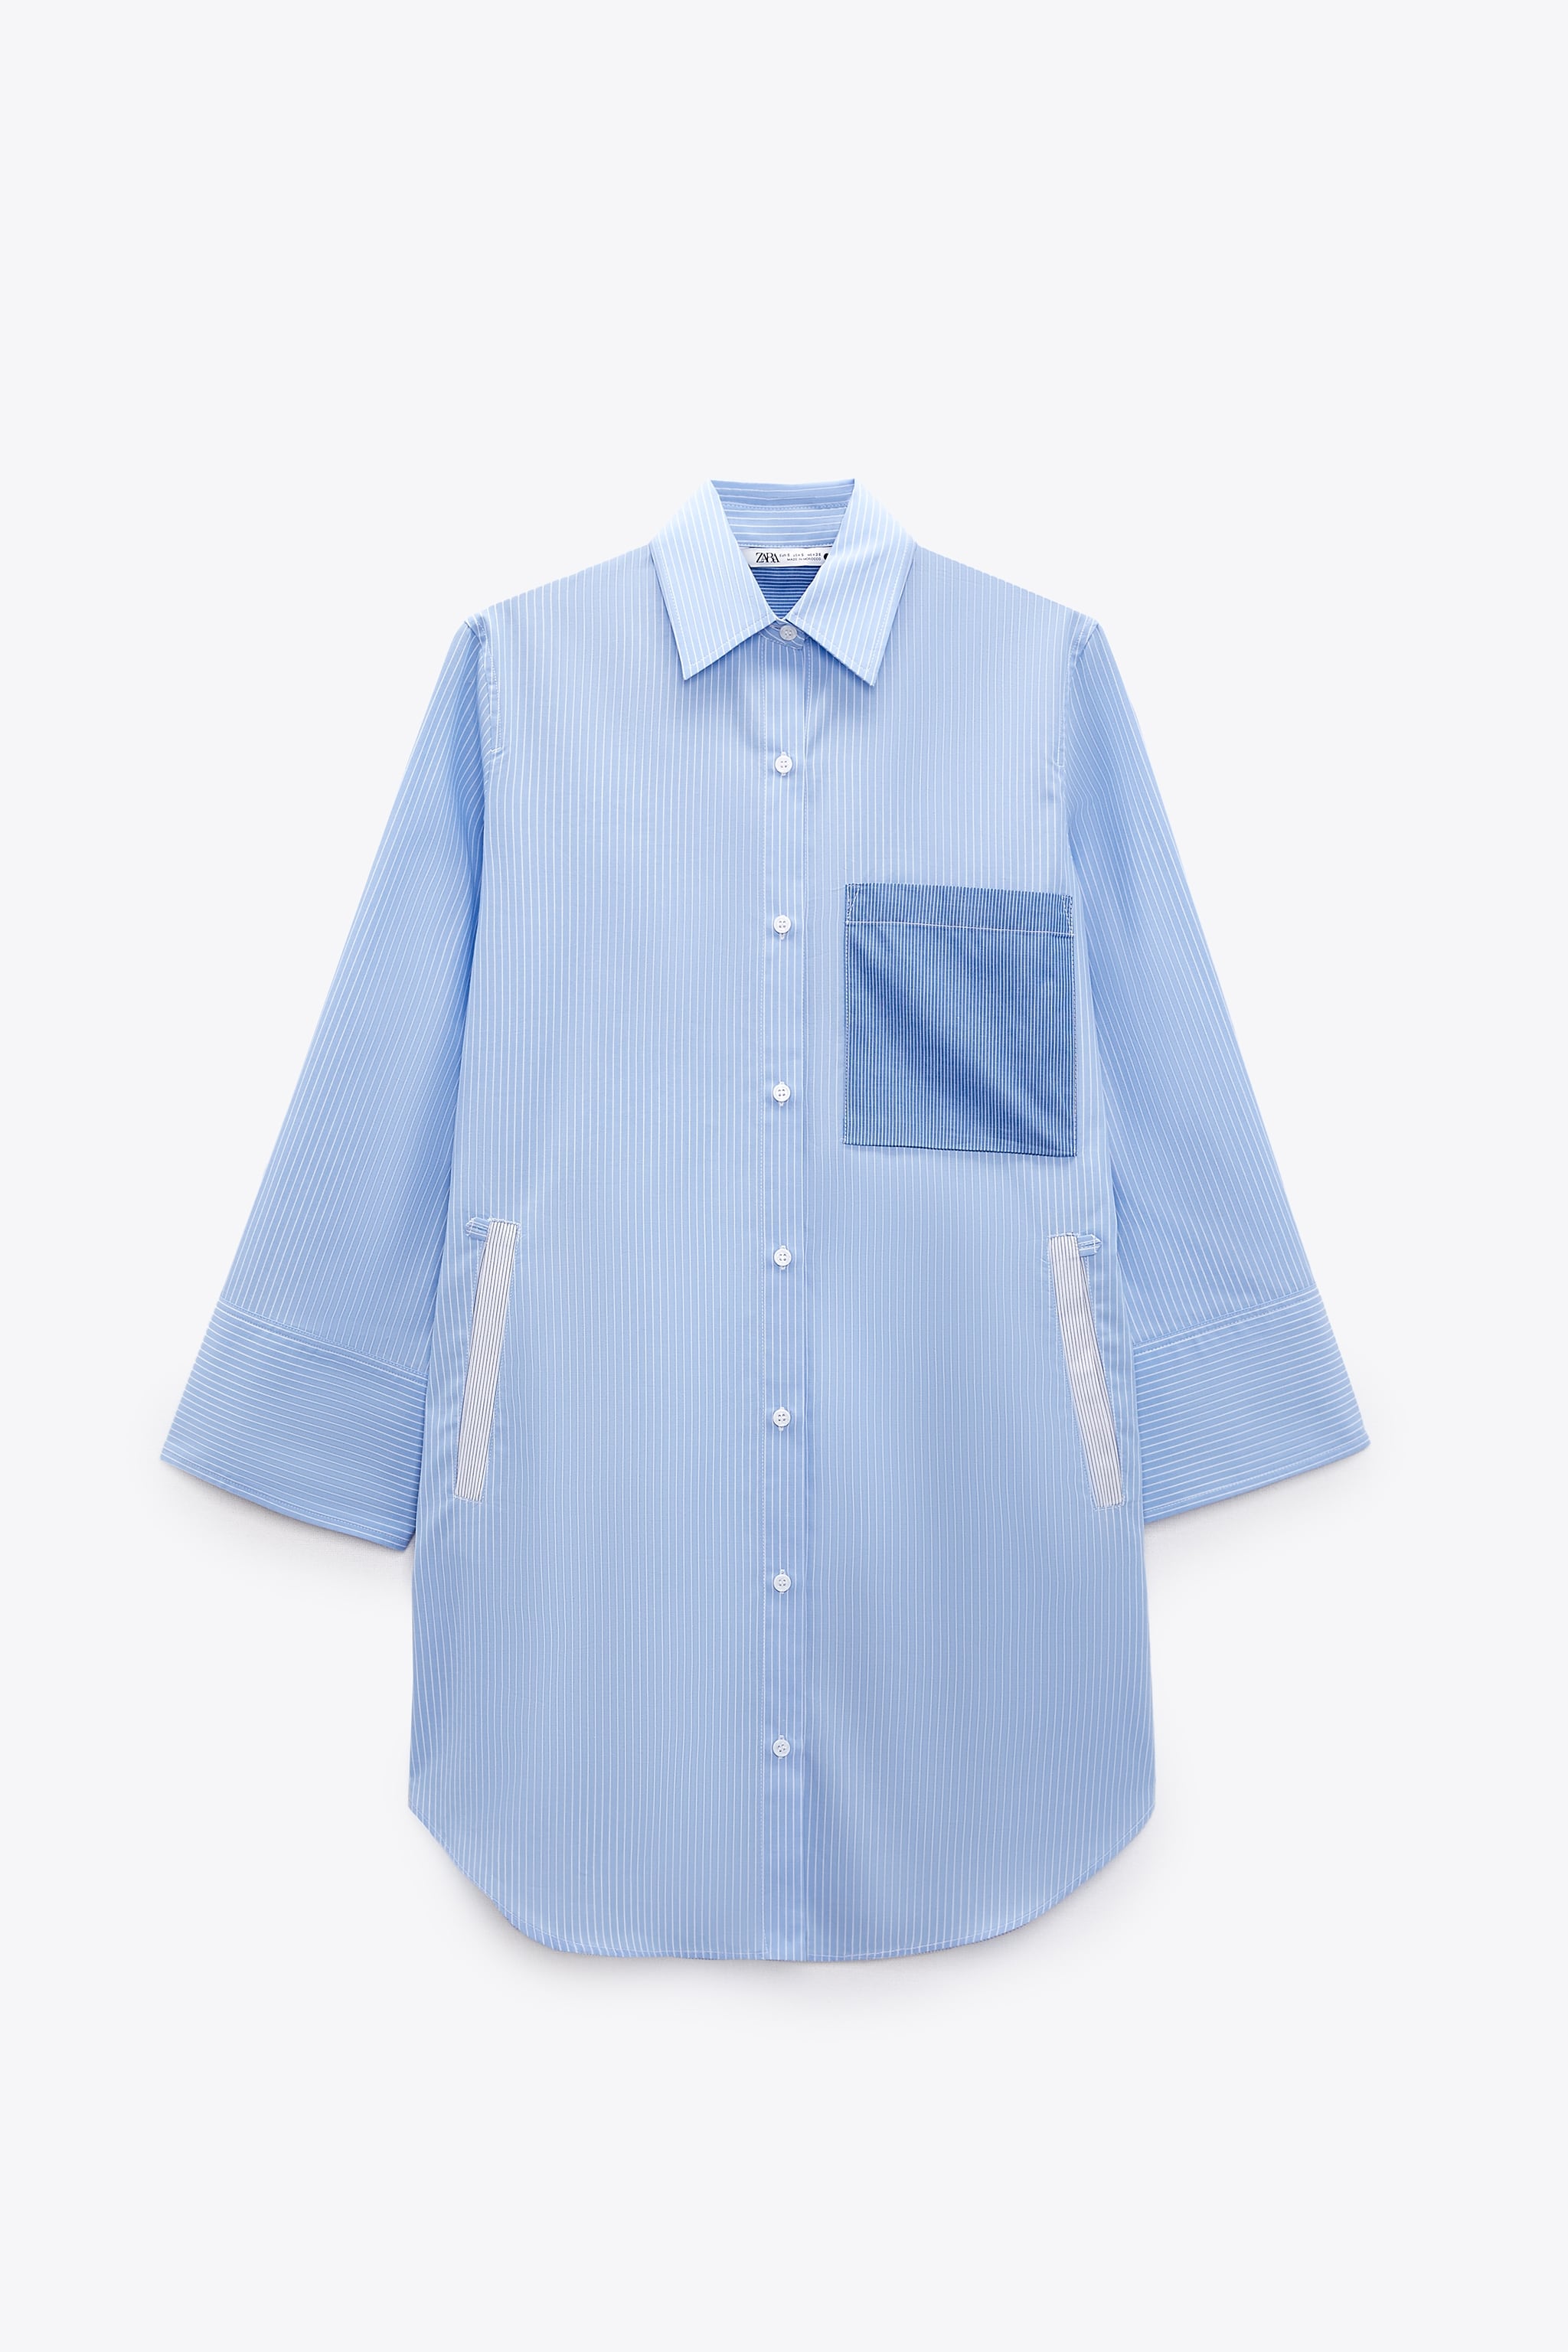 Рубашка женская ZARA 02752367 синяя 2XL (доставка из-за рубежа)